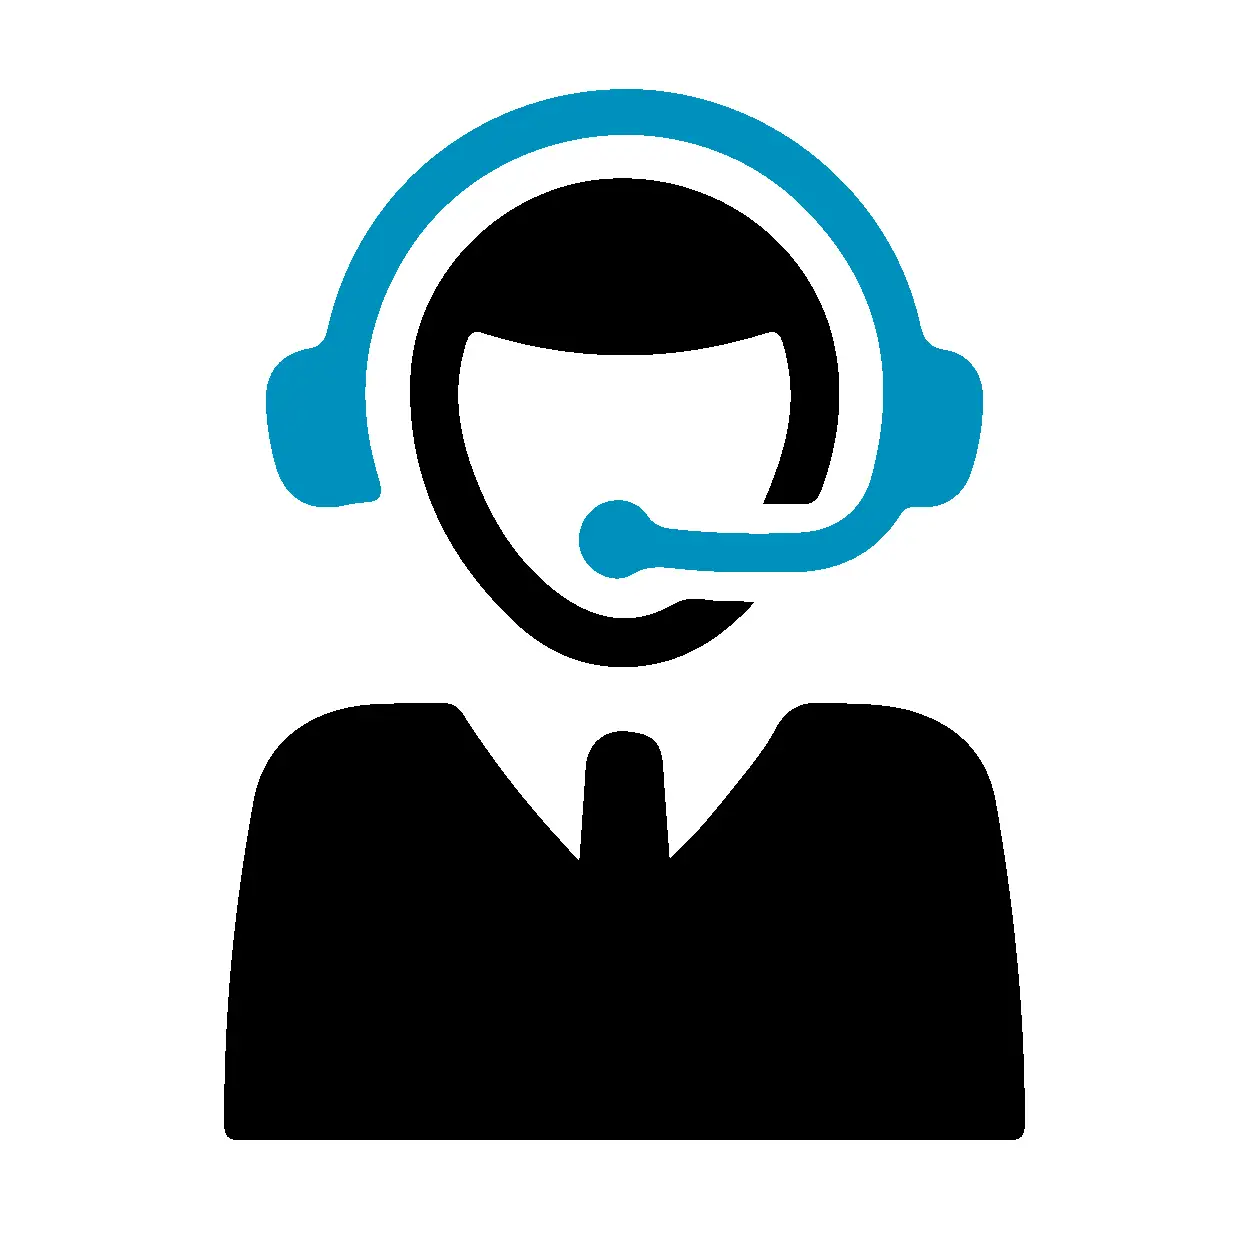 Der Qntrol Administrationsservice richtet schnell und unkompliziert Hotlinelösungen ein